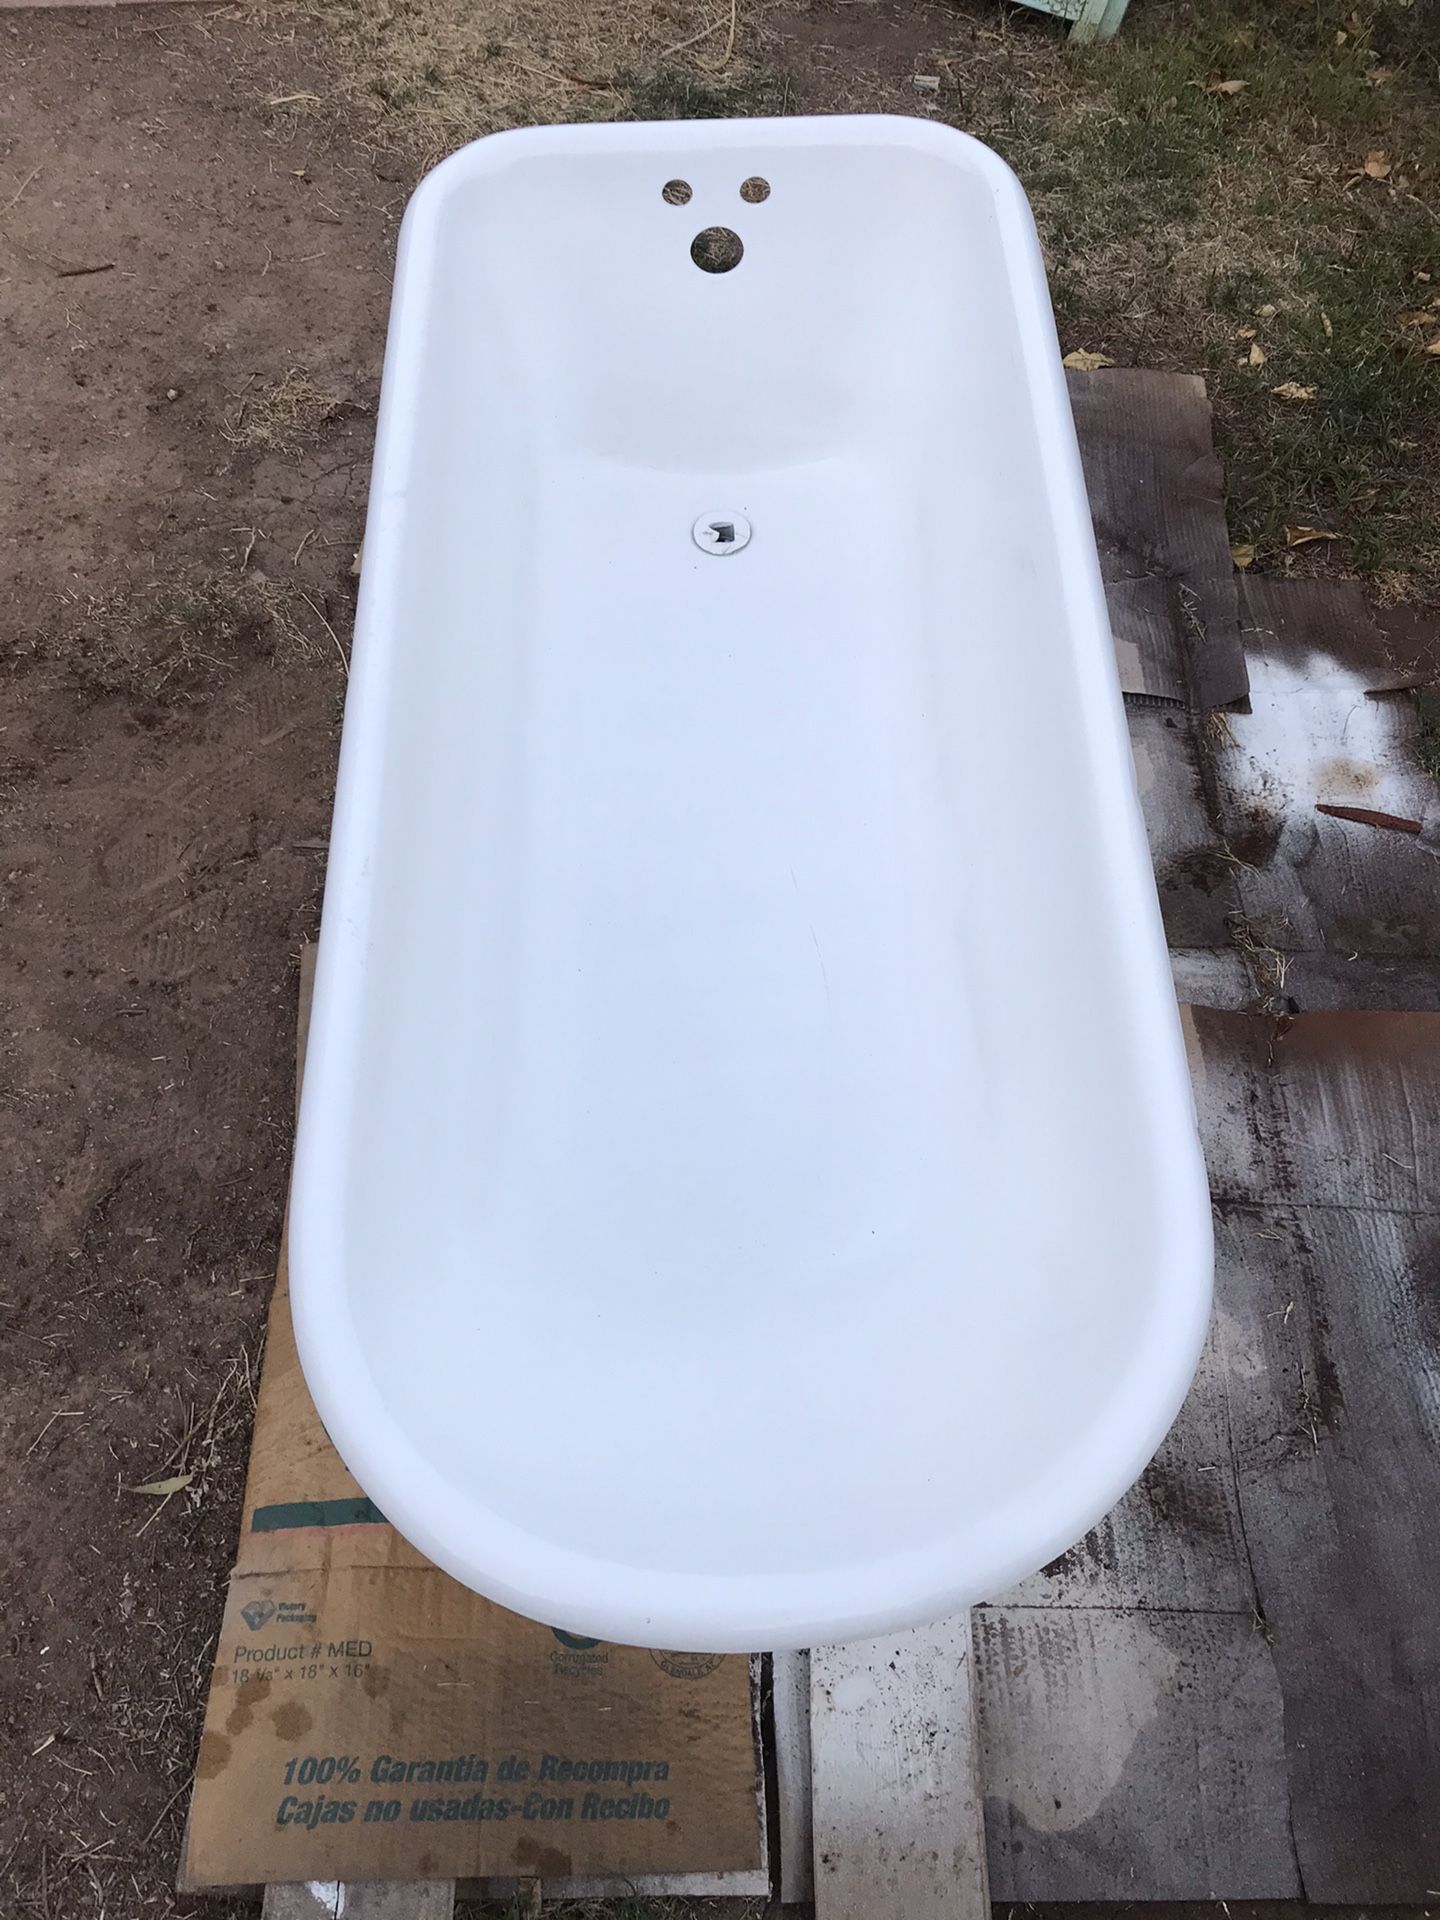 Vintage Kohler Clawfoot bathtub 1928 cast iron